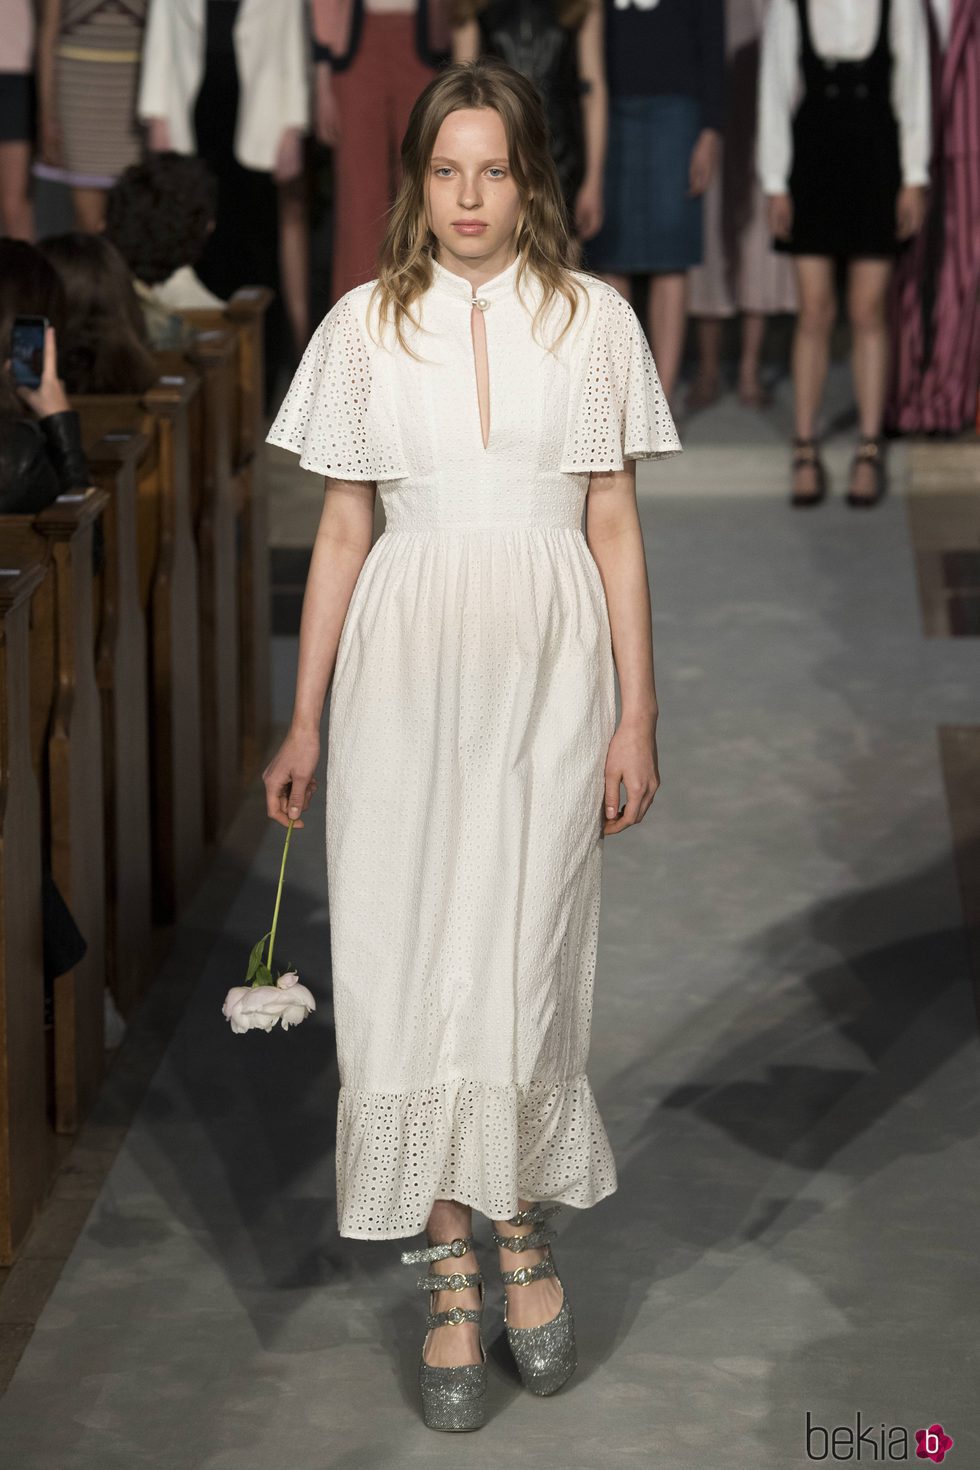 Vestido blanco de la colección verano 2017 de Alexa Chung presentada en Londres